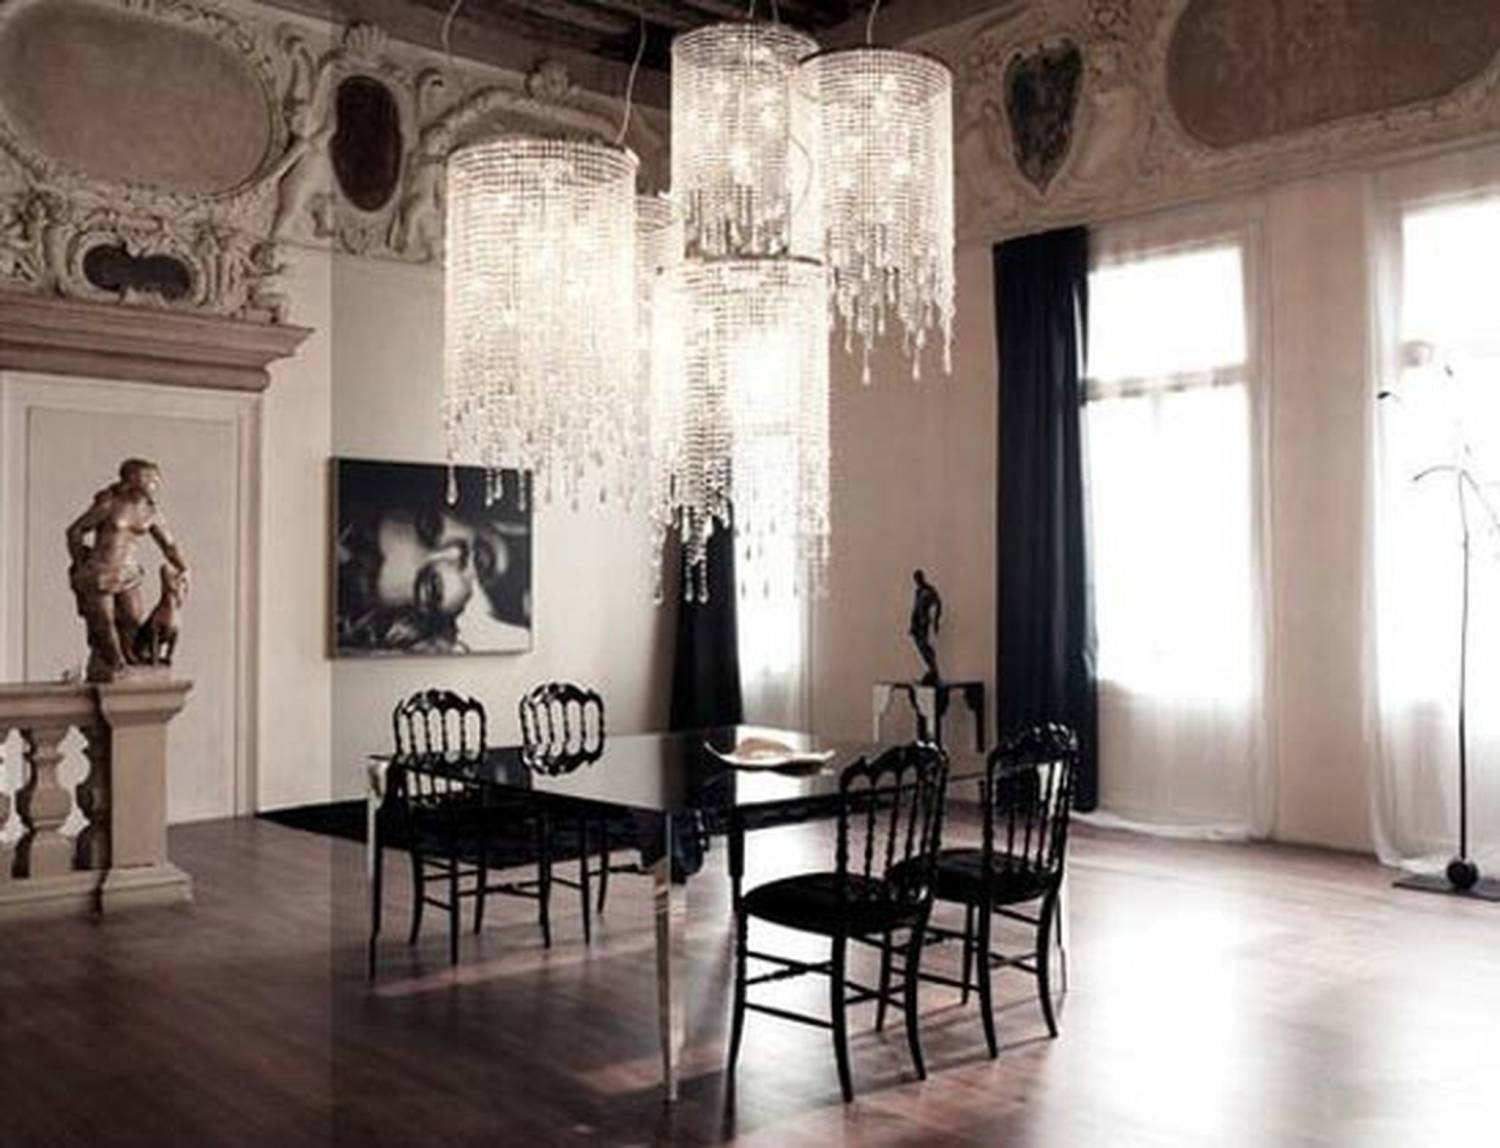 Характерные особенности готического стиля обустройство помещения, нюансы выбора мебели и декоративных элементов интерьера